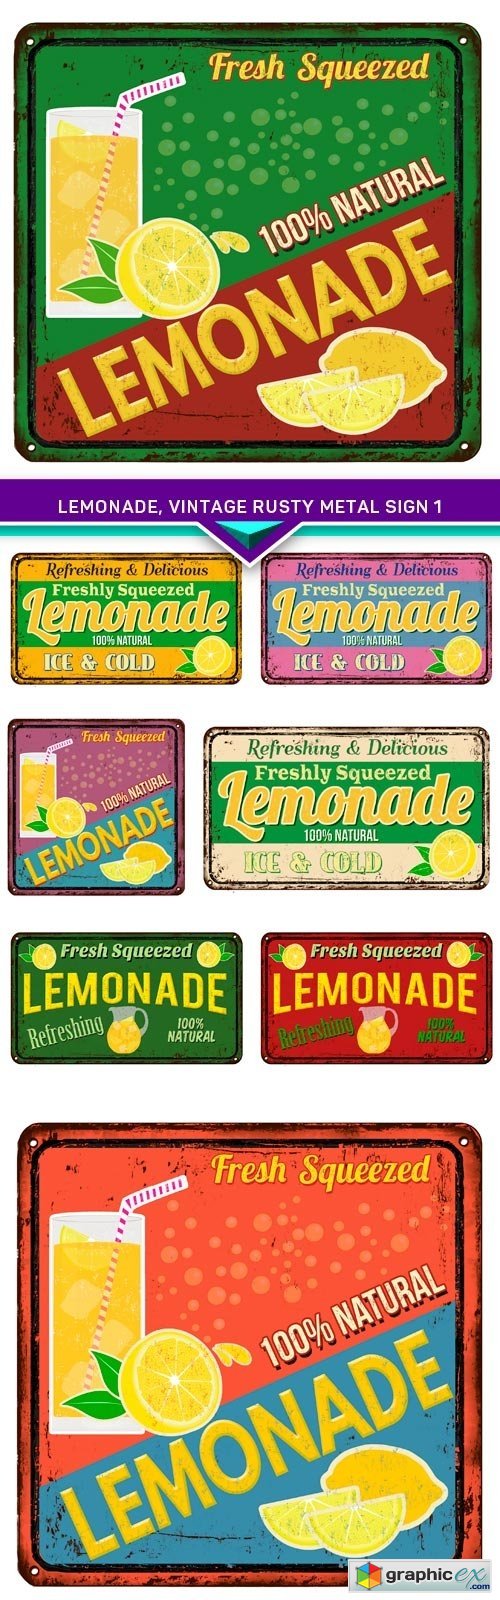 Lemonade, vintage rusty metal sign 1 8x EPS